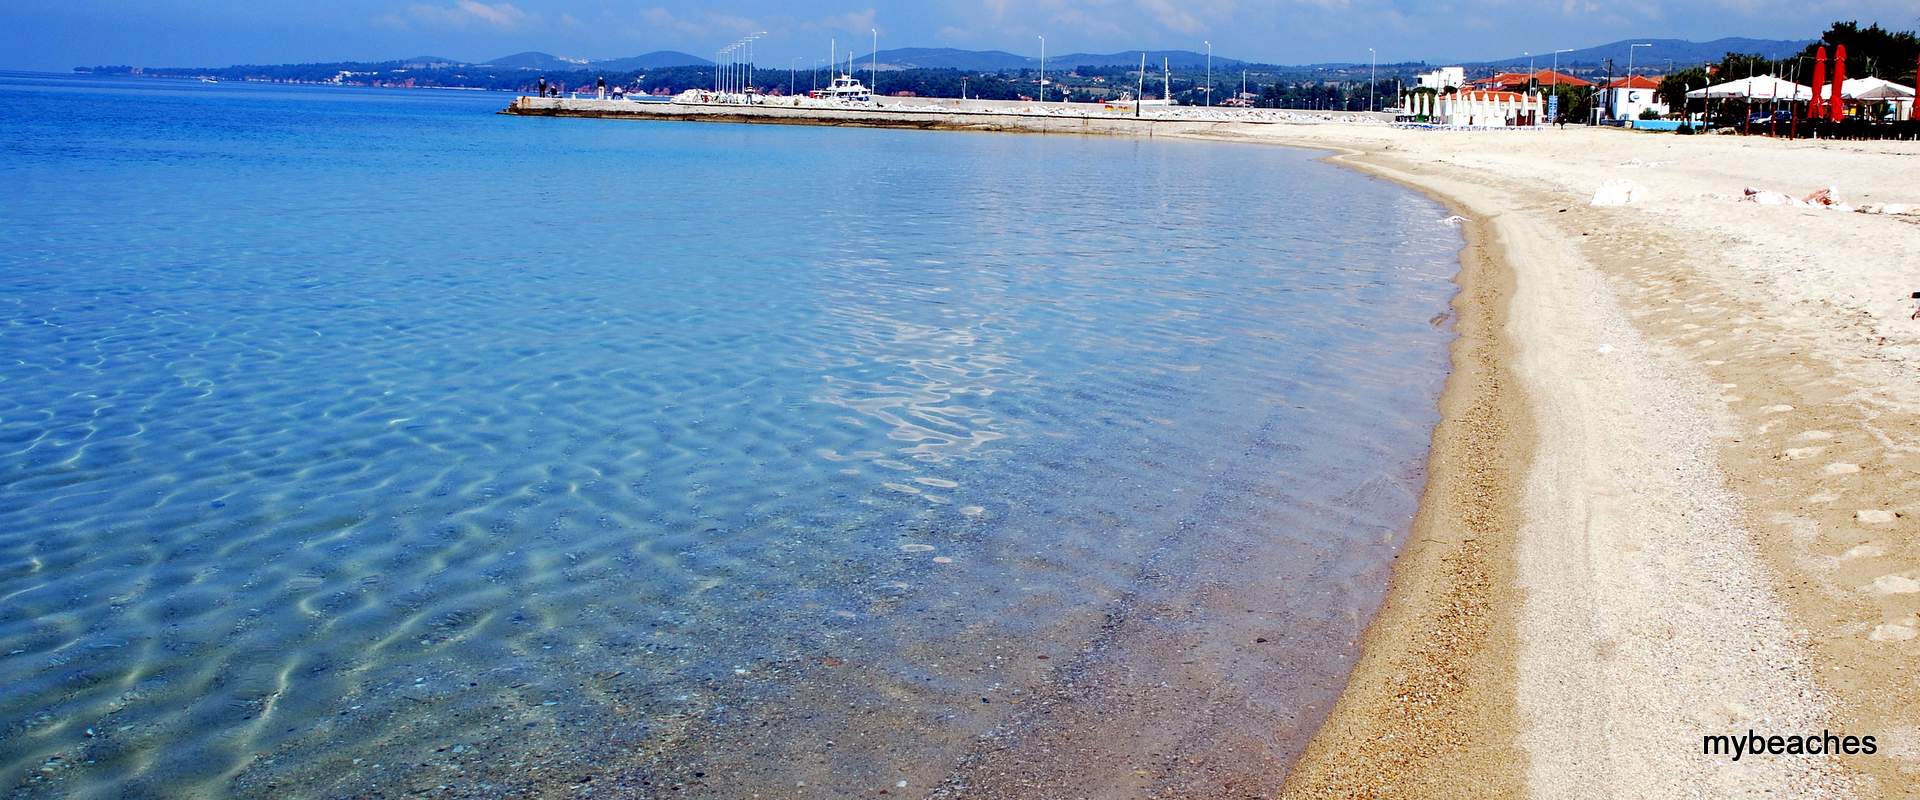 Nikiti beach, Sithonia, Halkidiki, Greece